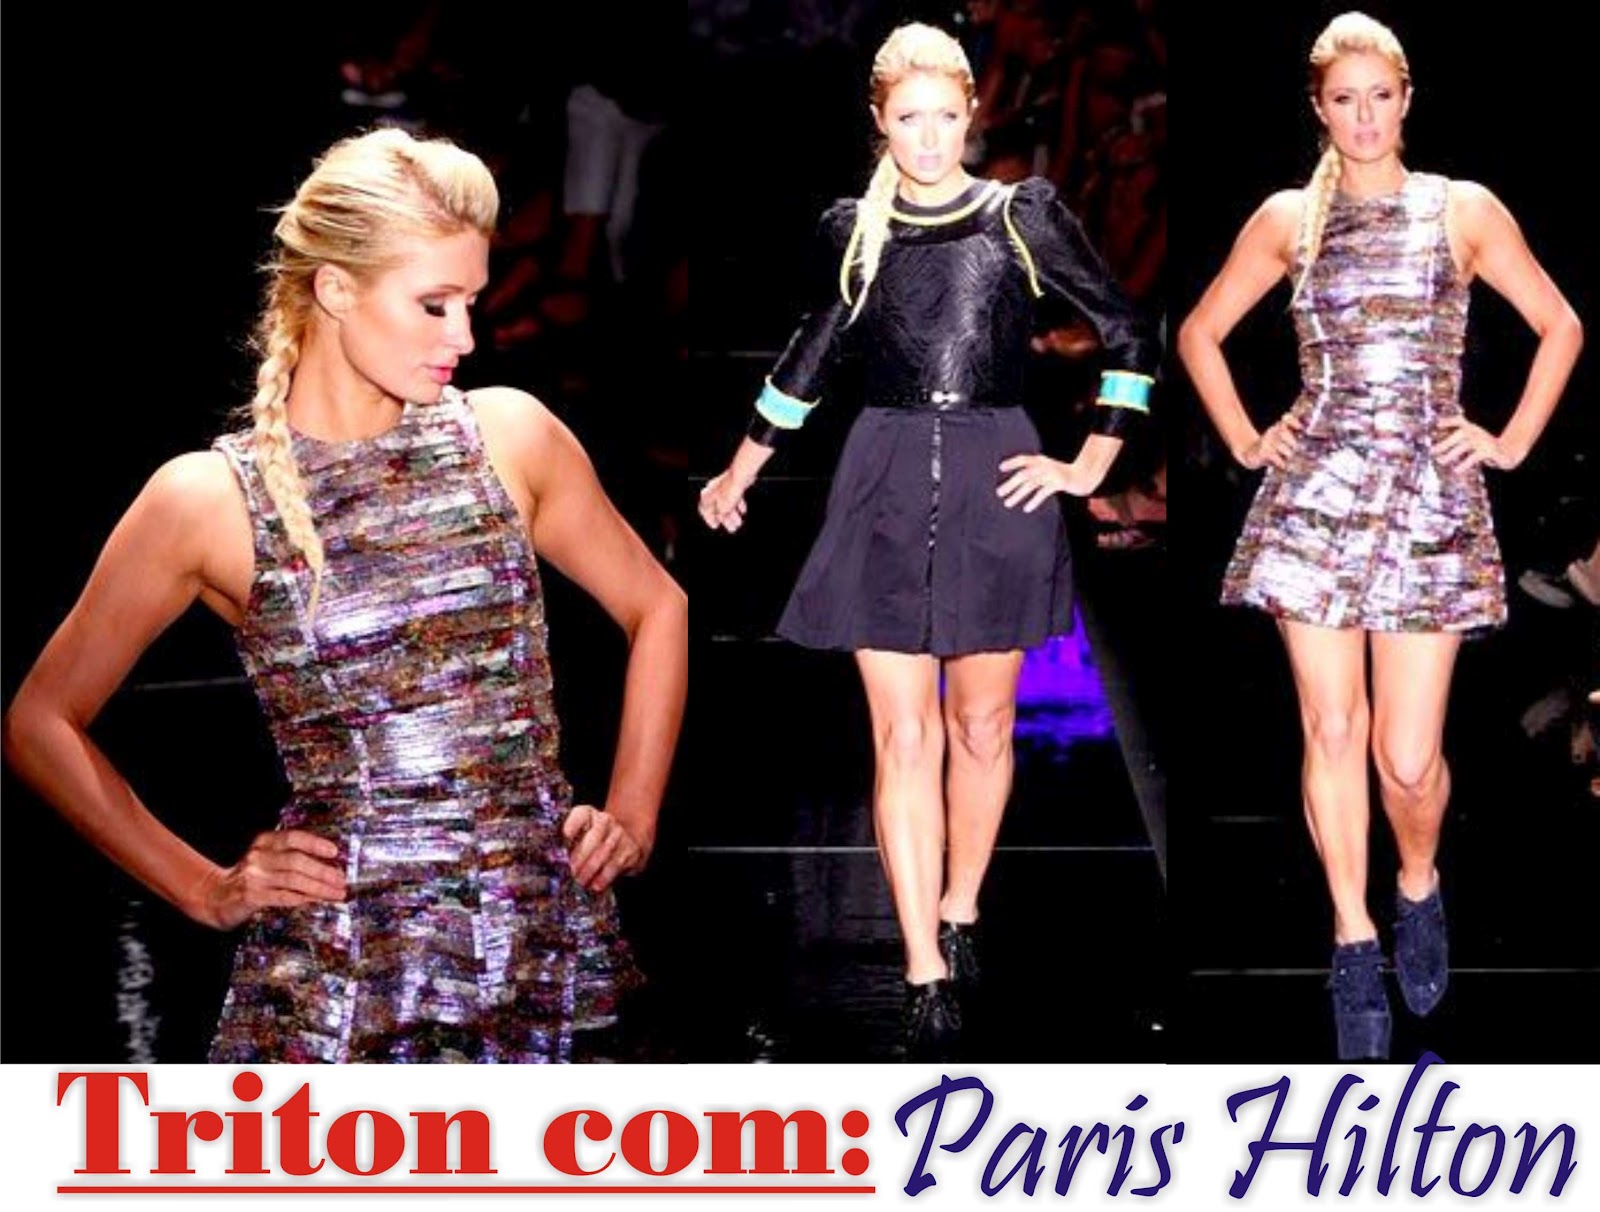 http://4.bp.blogspot.com/-N5j09svsF1w/T_9vCM-oCRI/AAAAAAAACzw/TkbfU6QrI_g/s1600/SPFW+Inverno+2011+-+Frisson+Paris+Hilton+Triton.jpg